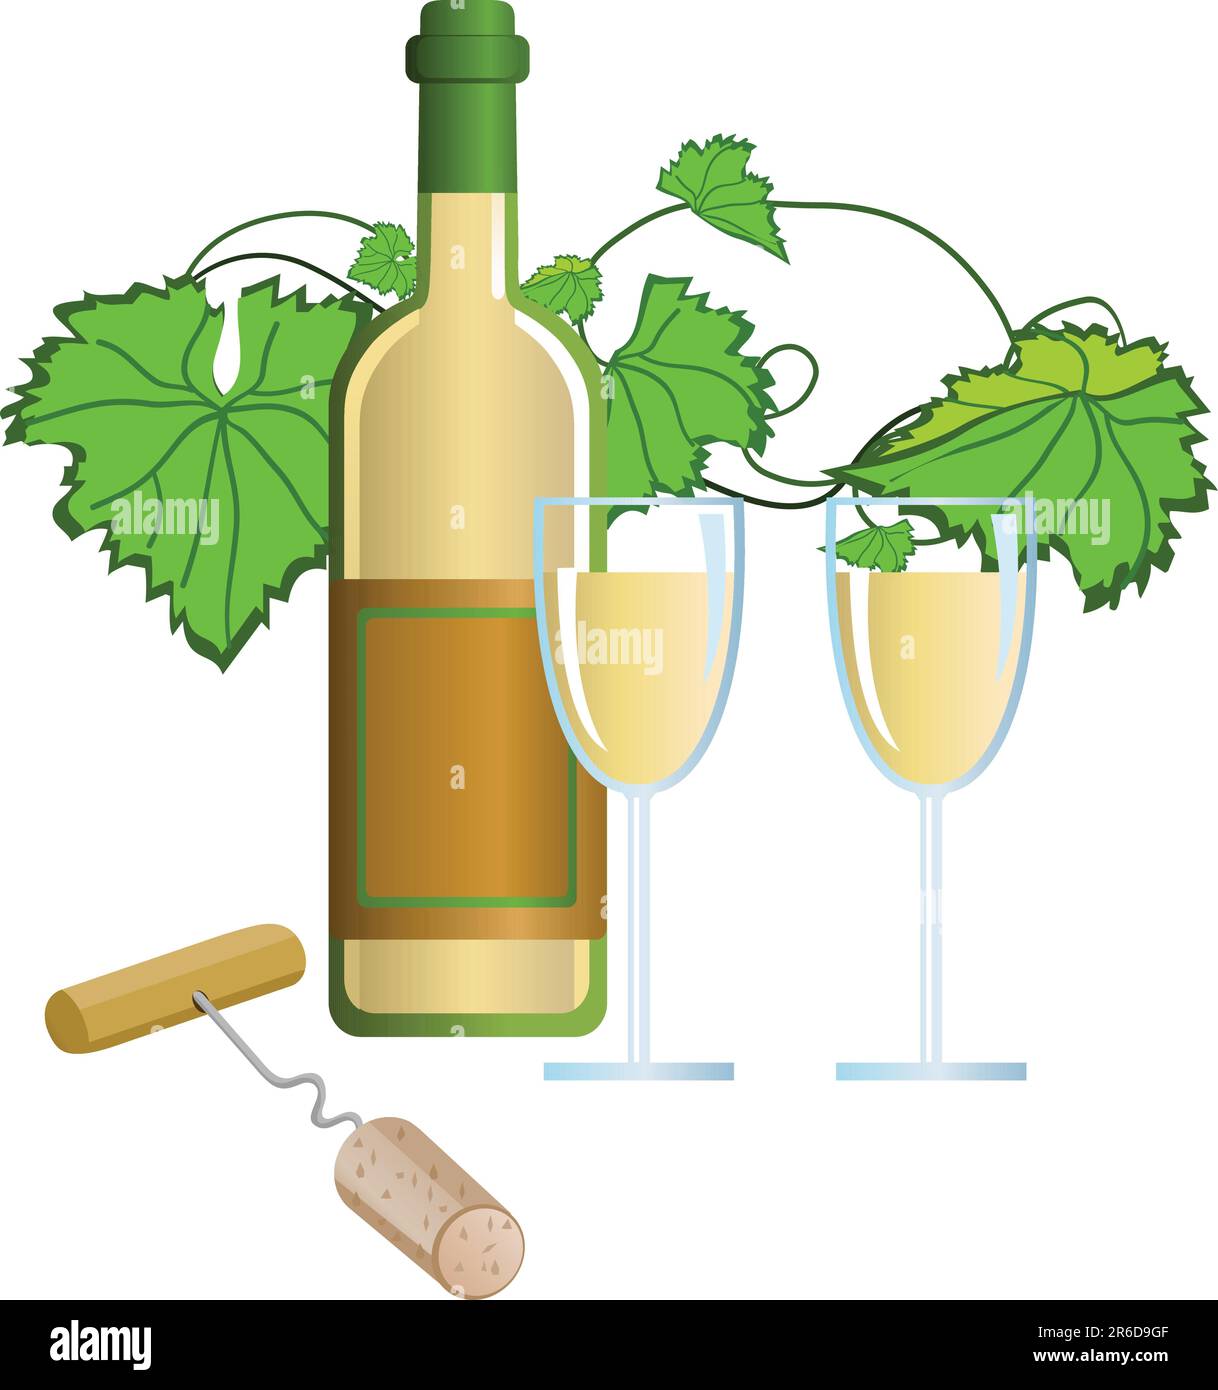 Illustration du vin, des verres et de la tire-bouchon Image